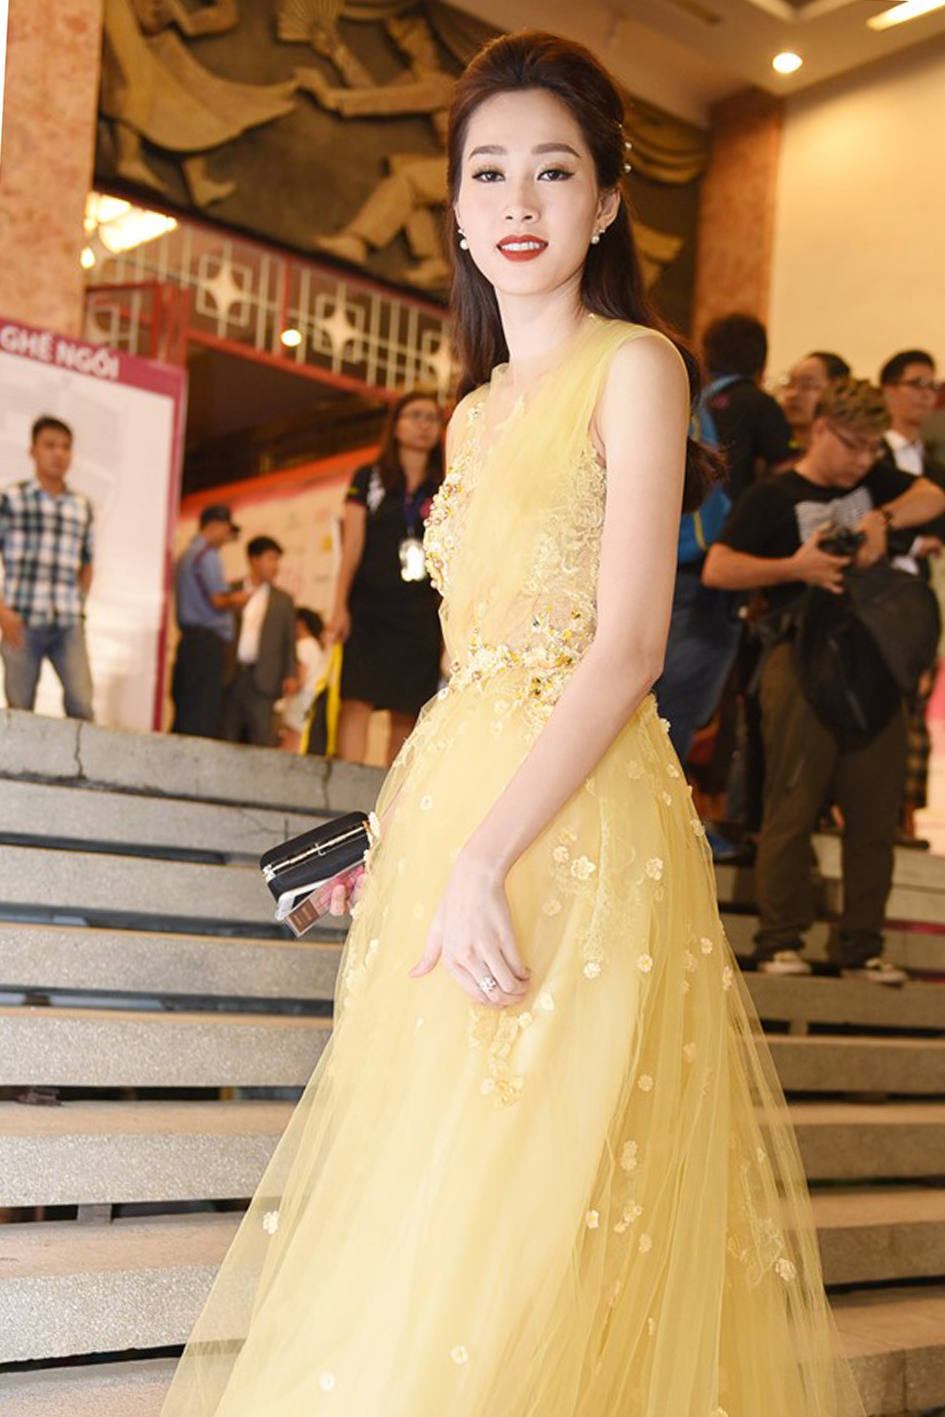 Đặng Thu Thảo là một trong những hoa hậu Việt Nam chiếm được nhiều tình cảm của khán giả bởi nét đẹp hiền lành, trong sáng.